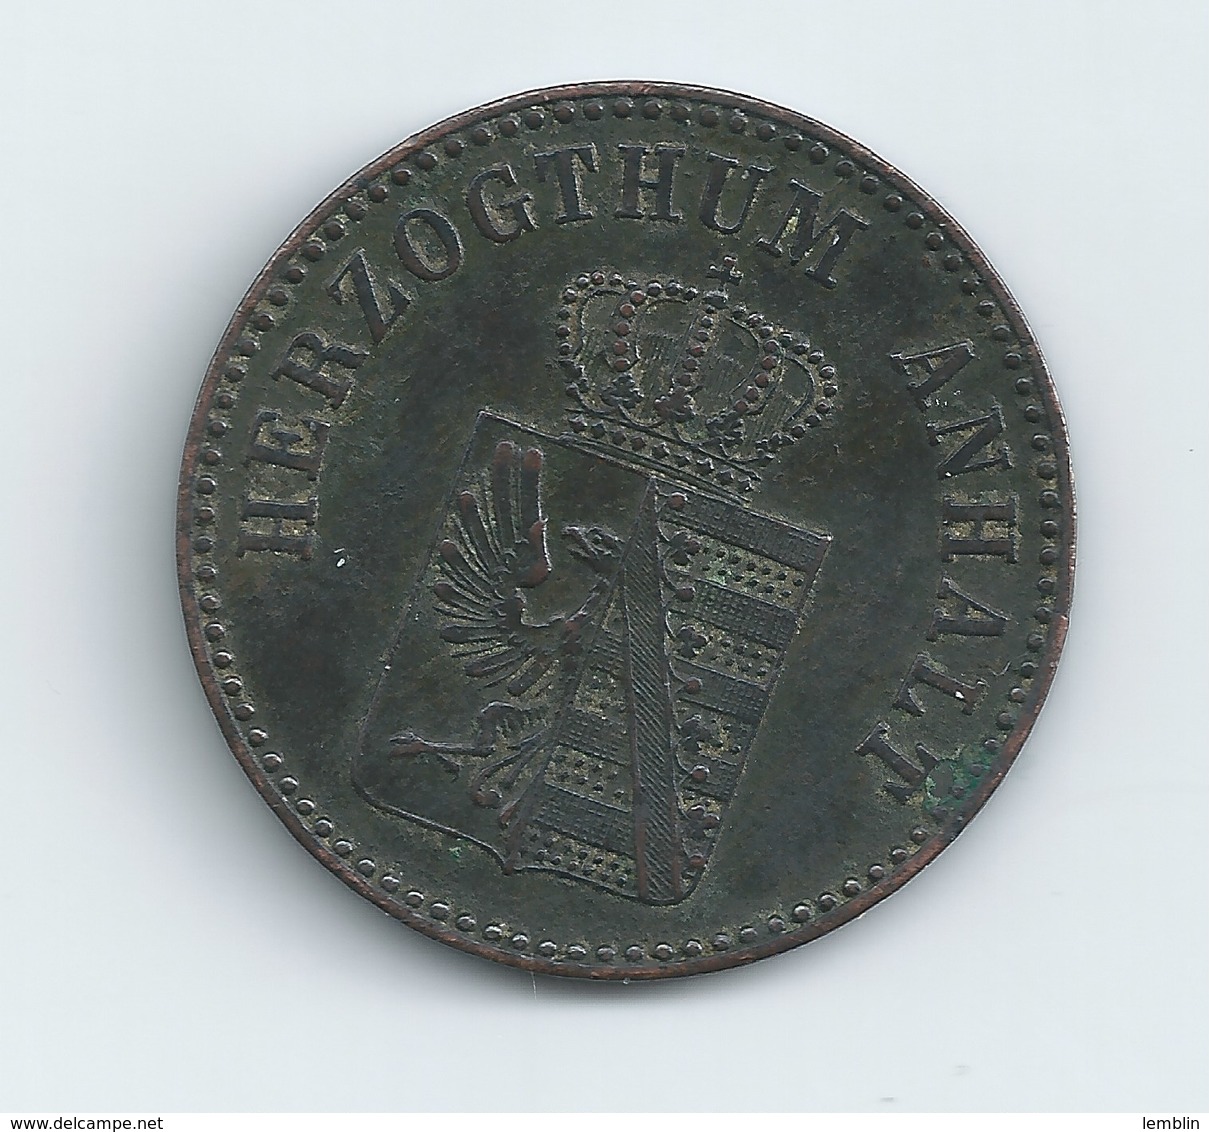 DUCHE D'ANHALT 3 PFENNIGS 1864 LEOPOLD IV - Groschen & Andere Kleinmünzen